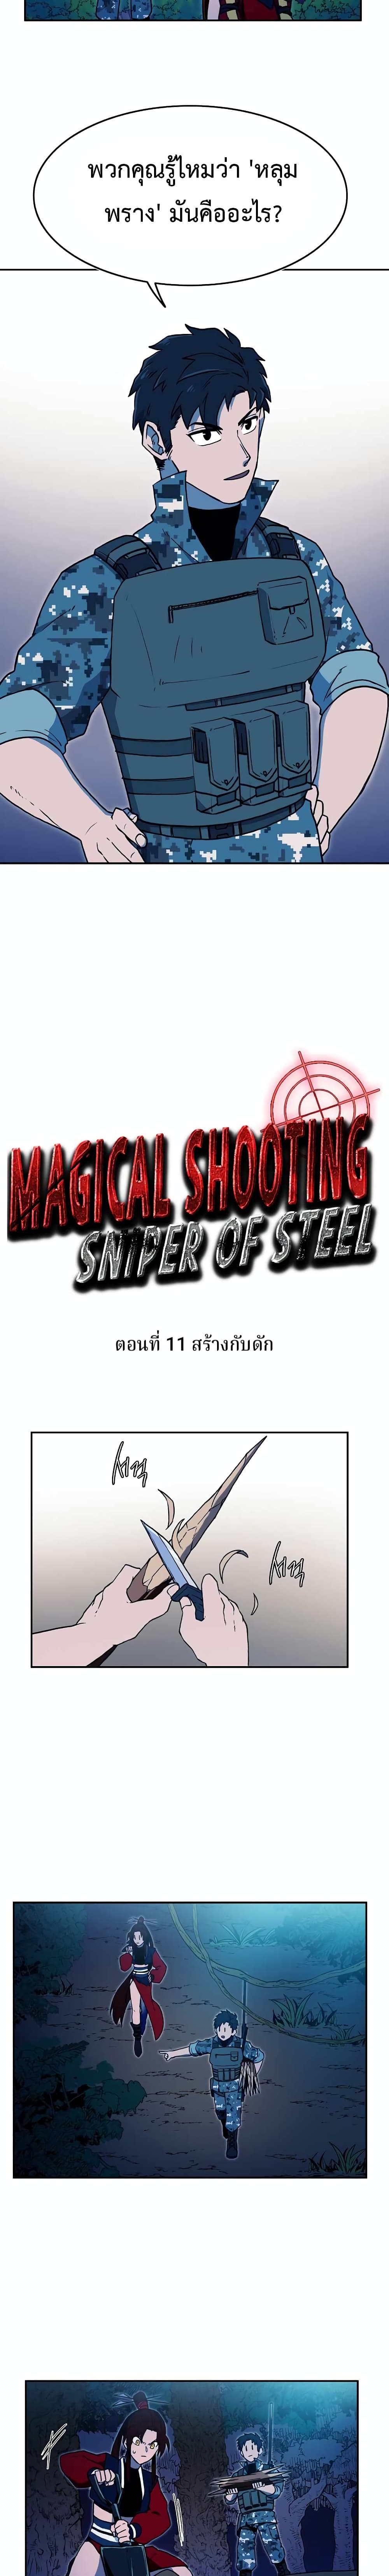 อ่านการ์ตูน Magical Shooting: Sniper of Steel 11 ภาพที่ 4